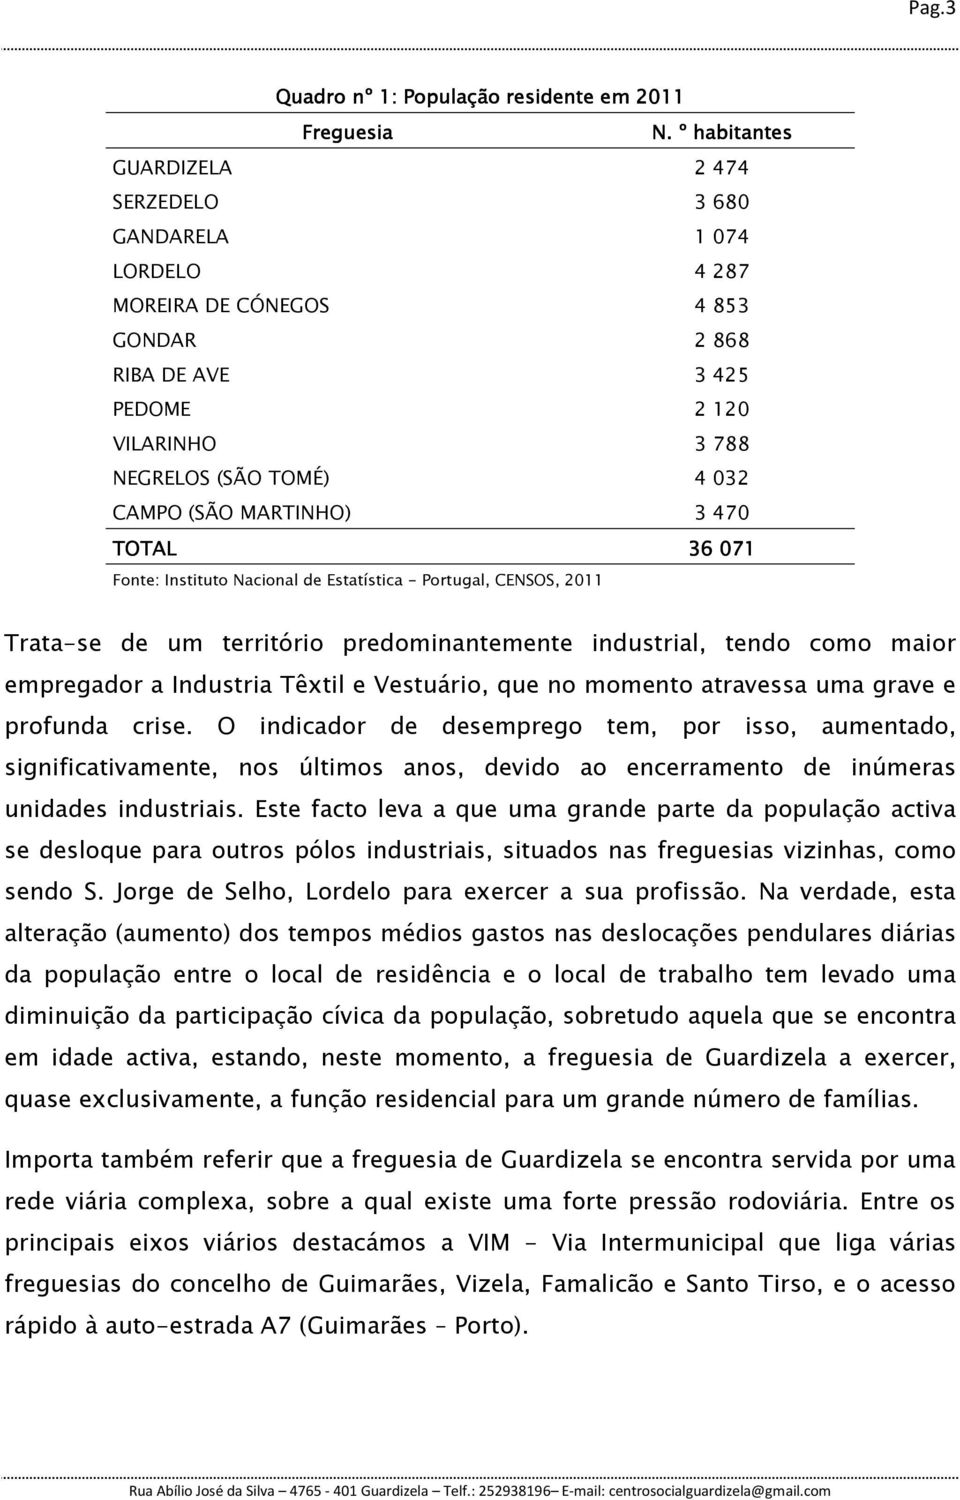 MARTINHO) 3 470 TOTAL 36 071 Fonte: Instituto Nacional de Estatística - Portugal, CENSOS, 2011 Trata-se de um território predominantemente industrial, tendo como maior empregador a Industria Têxtil e